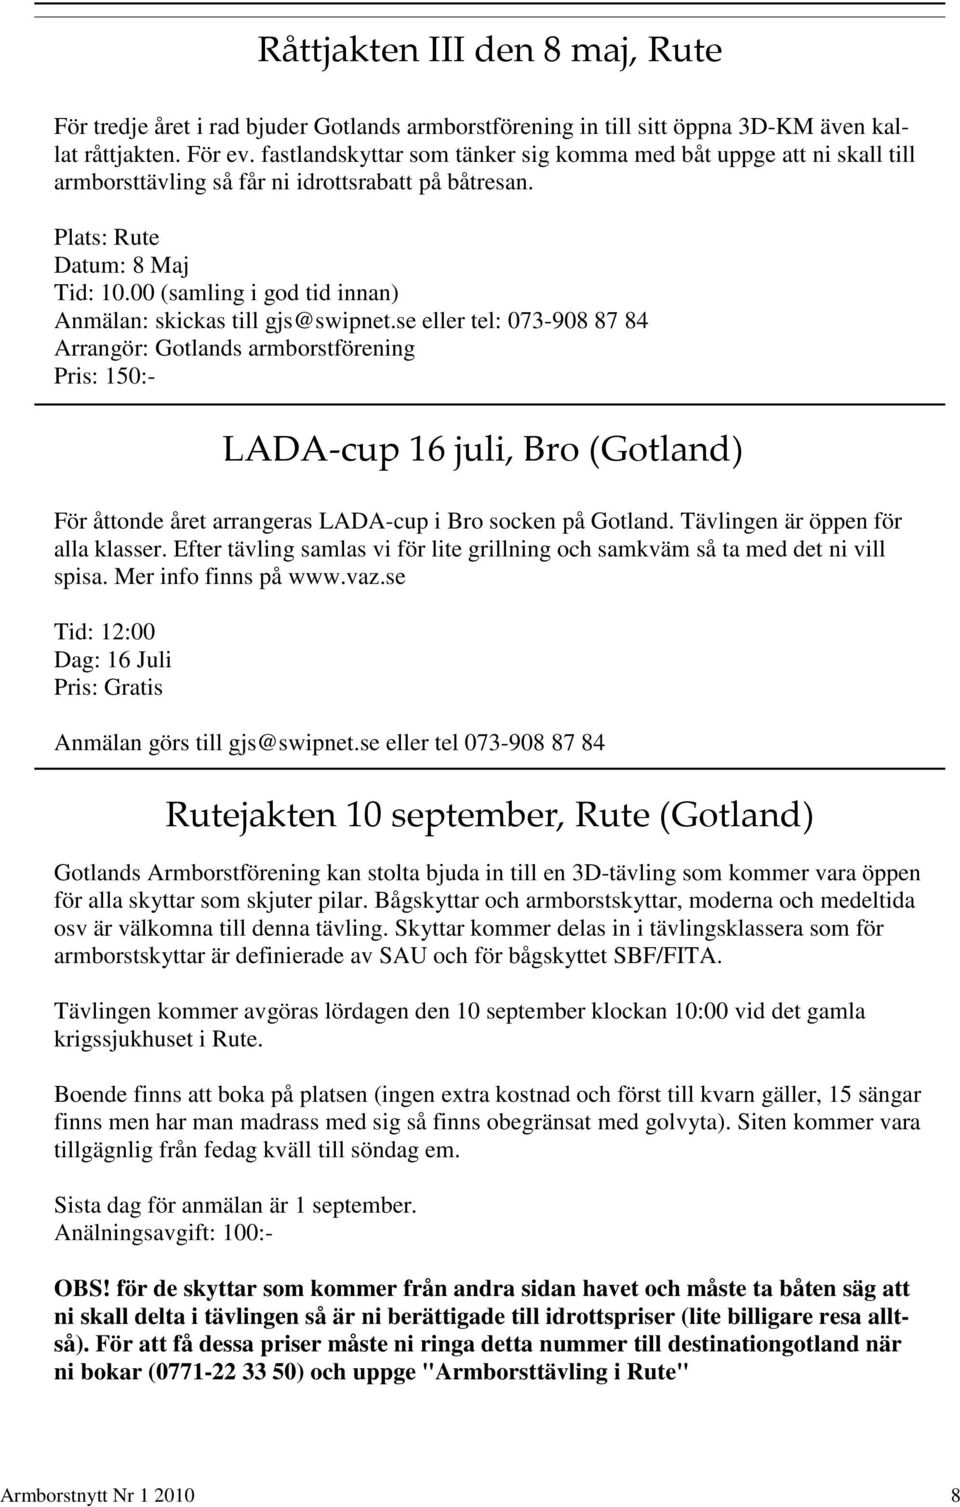 00 (samling i god tid innan) Anmälan: skickas till gjs@swipnet.se eller tel: 073-908 87 84 Arrangör: Gotlands armborstförening Pris: 150:- För åttonde året arrangeras LADA-cup i Bro socken på Gotland.